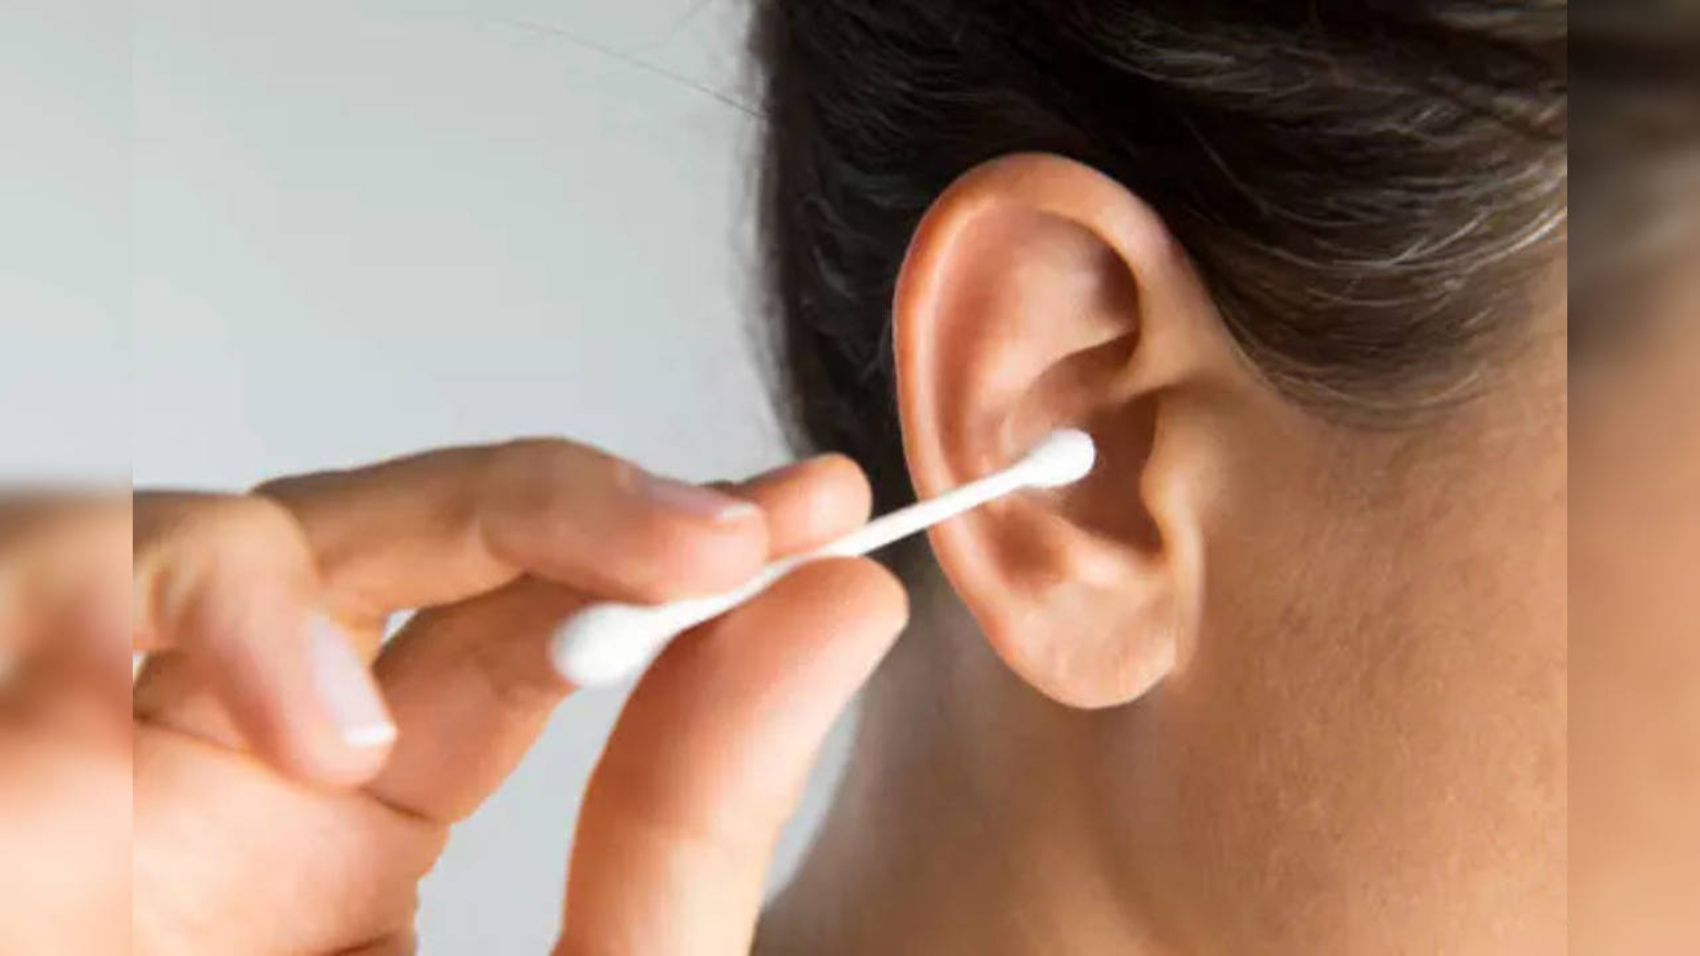 Biztonságosak-e az általad használt fülhallgatók, vagy okoznak maradandó halláskárosodást? Vedd